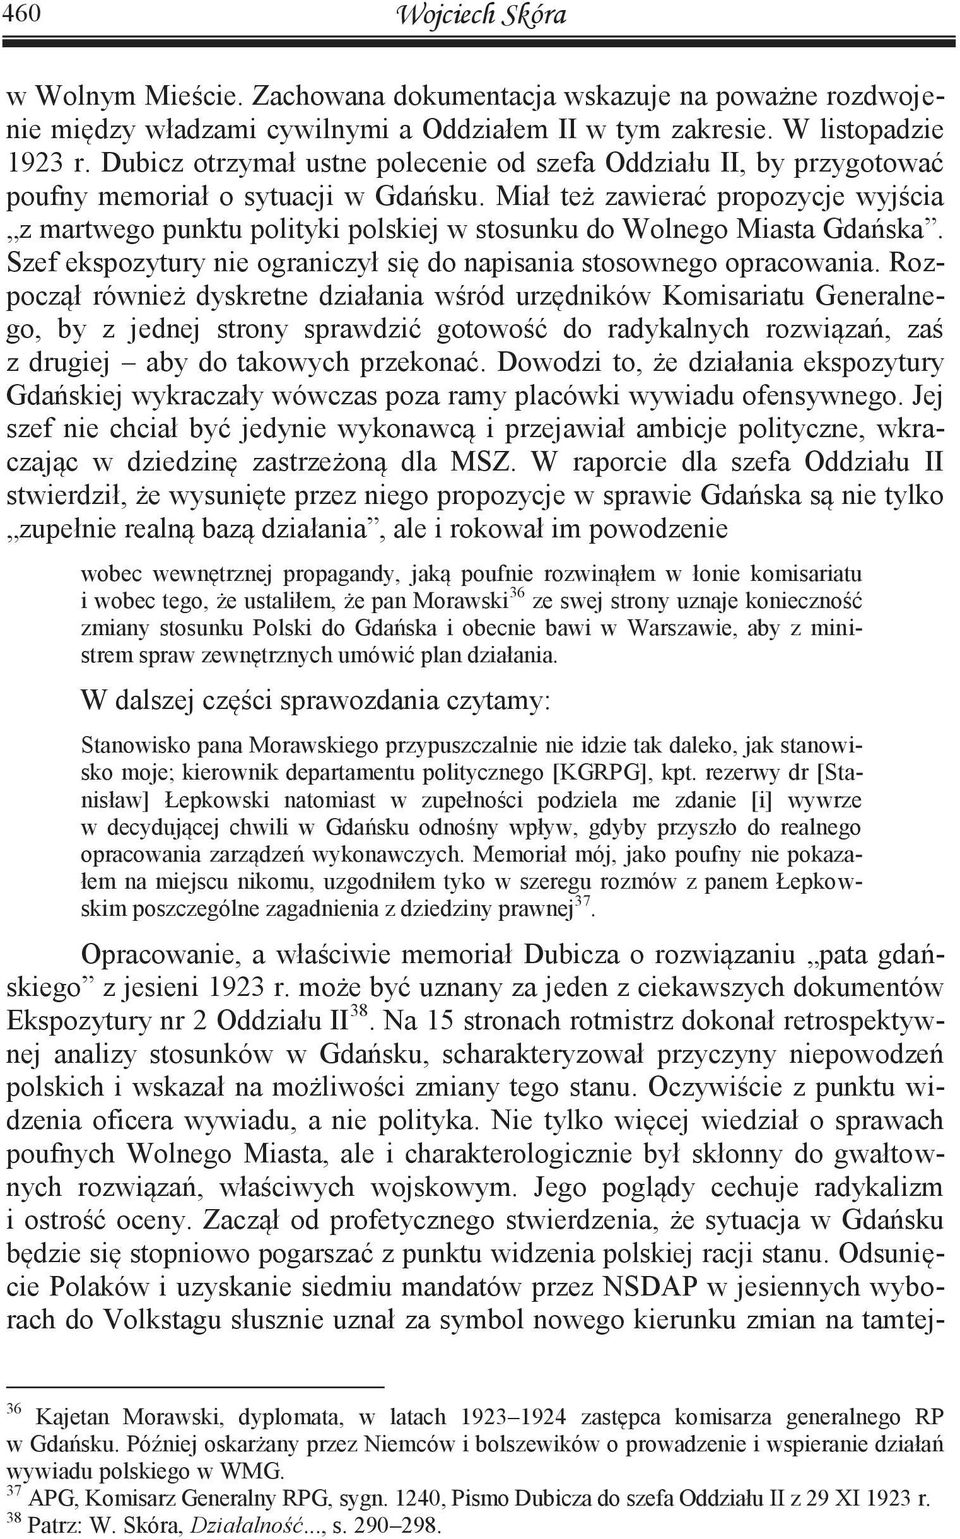 Miał też zawierać propozycje wyjścia z martwego punktu polityki polskiej w stosunku do Wolnego Miasta Gdańska. Szef ekspozytury nie ograniczył się do napisania stosownego opracowania.